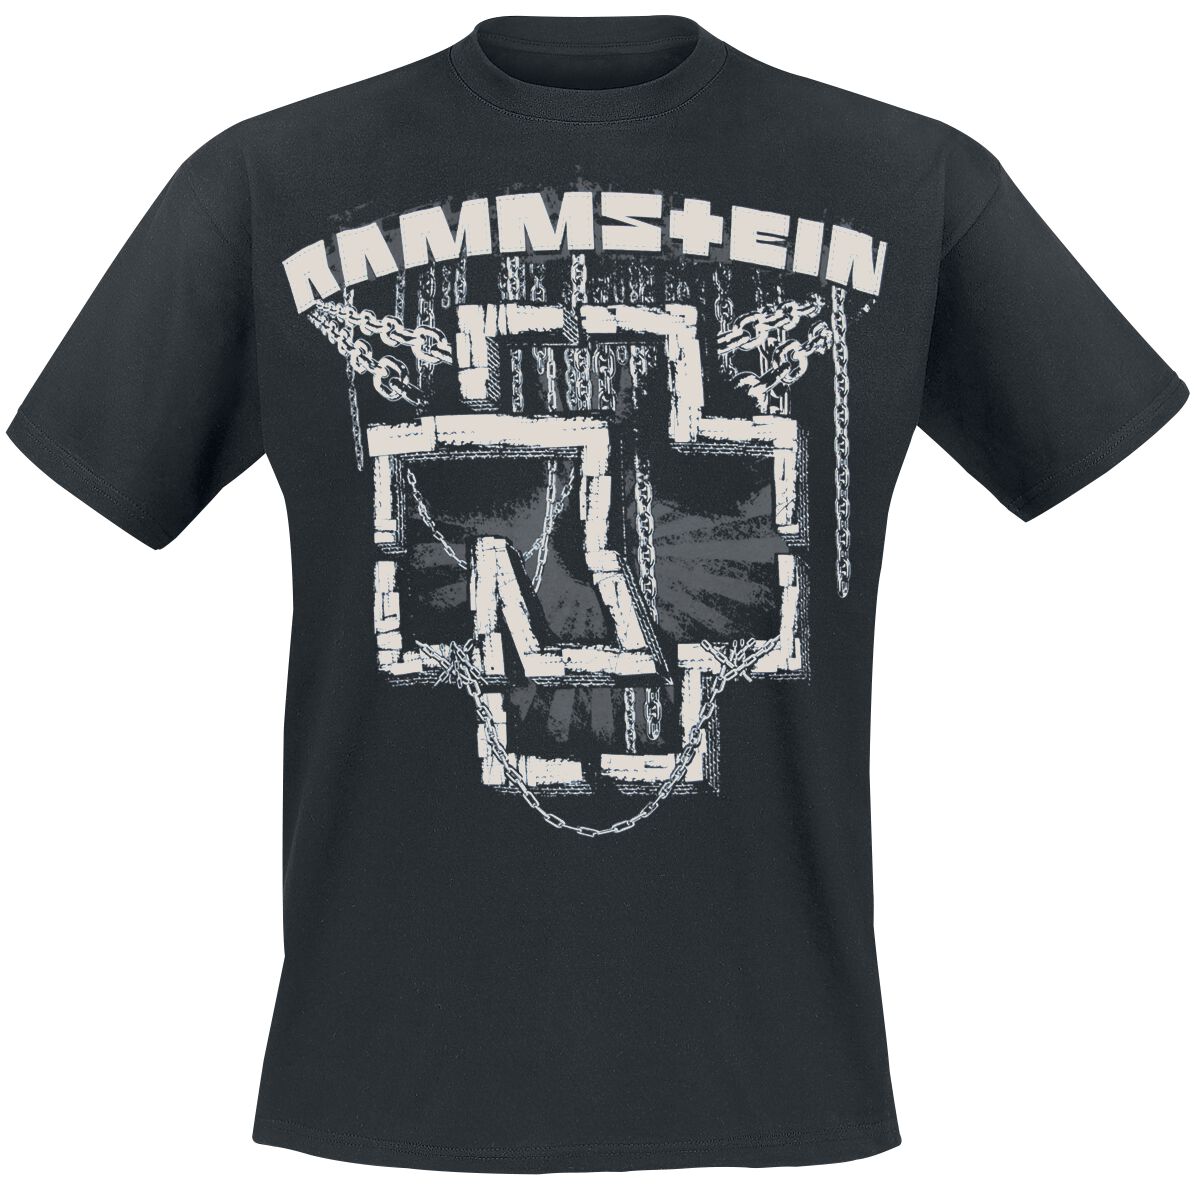 Rammstein T-Shirt - In Ketten - M bis 3XL - für Männer - Größe 3XL - schwarz  - Lizenziertes Merchandise!